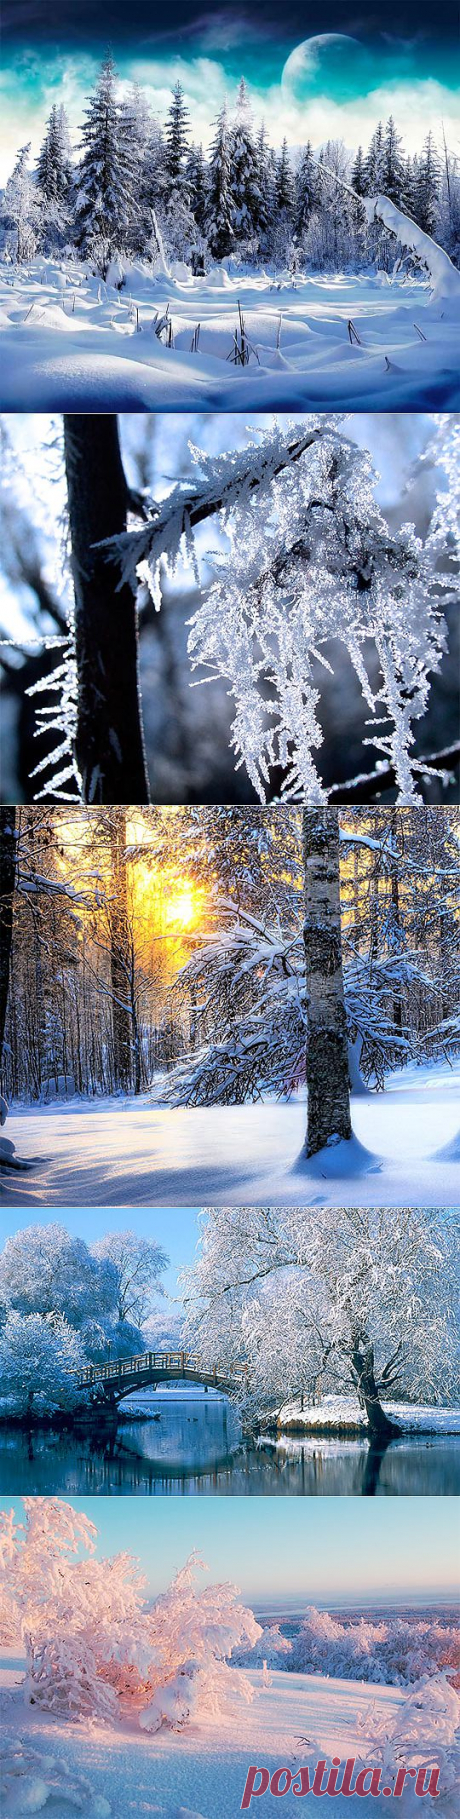 Зимний лес (49 фото) природа, деревья картинки видео